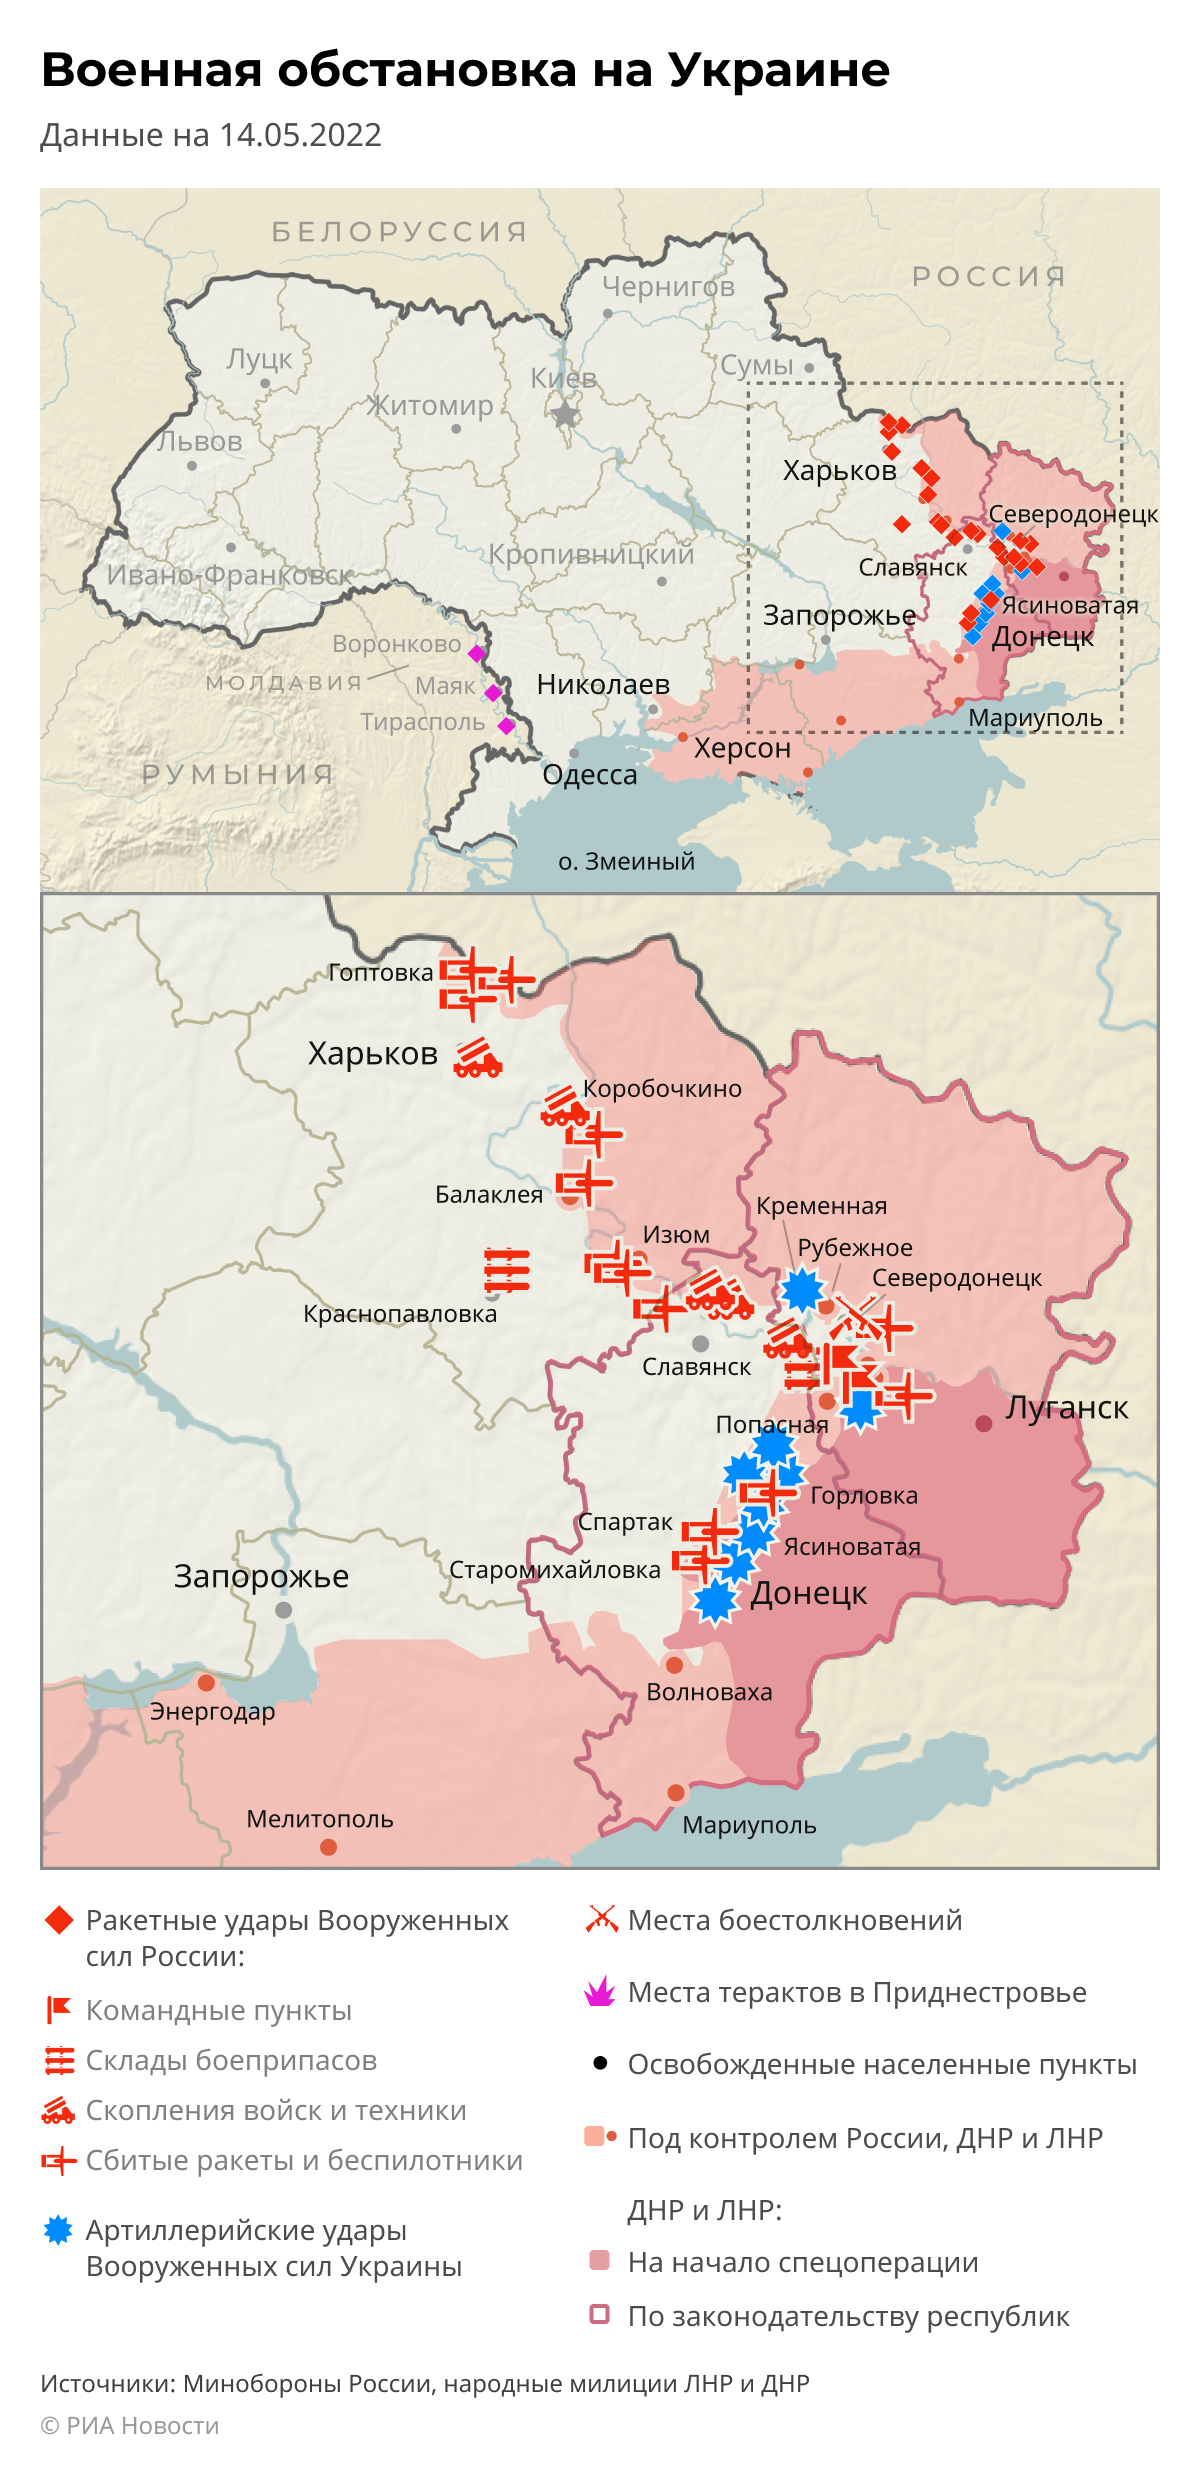 俄乌战争时间线及占领区变化 - 知乎